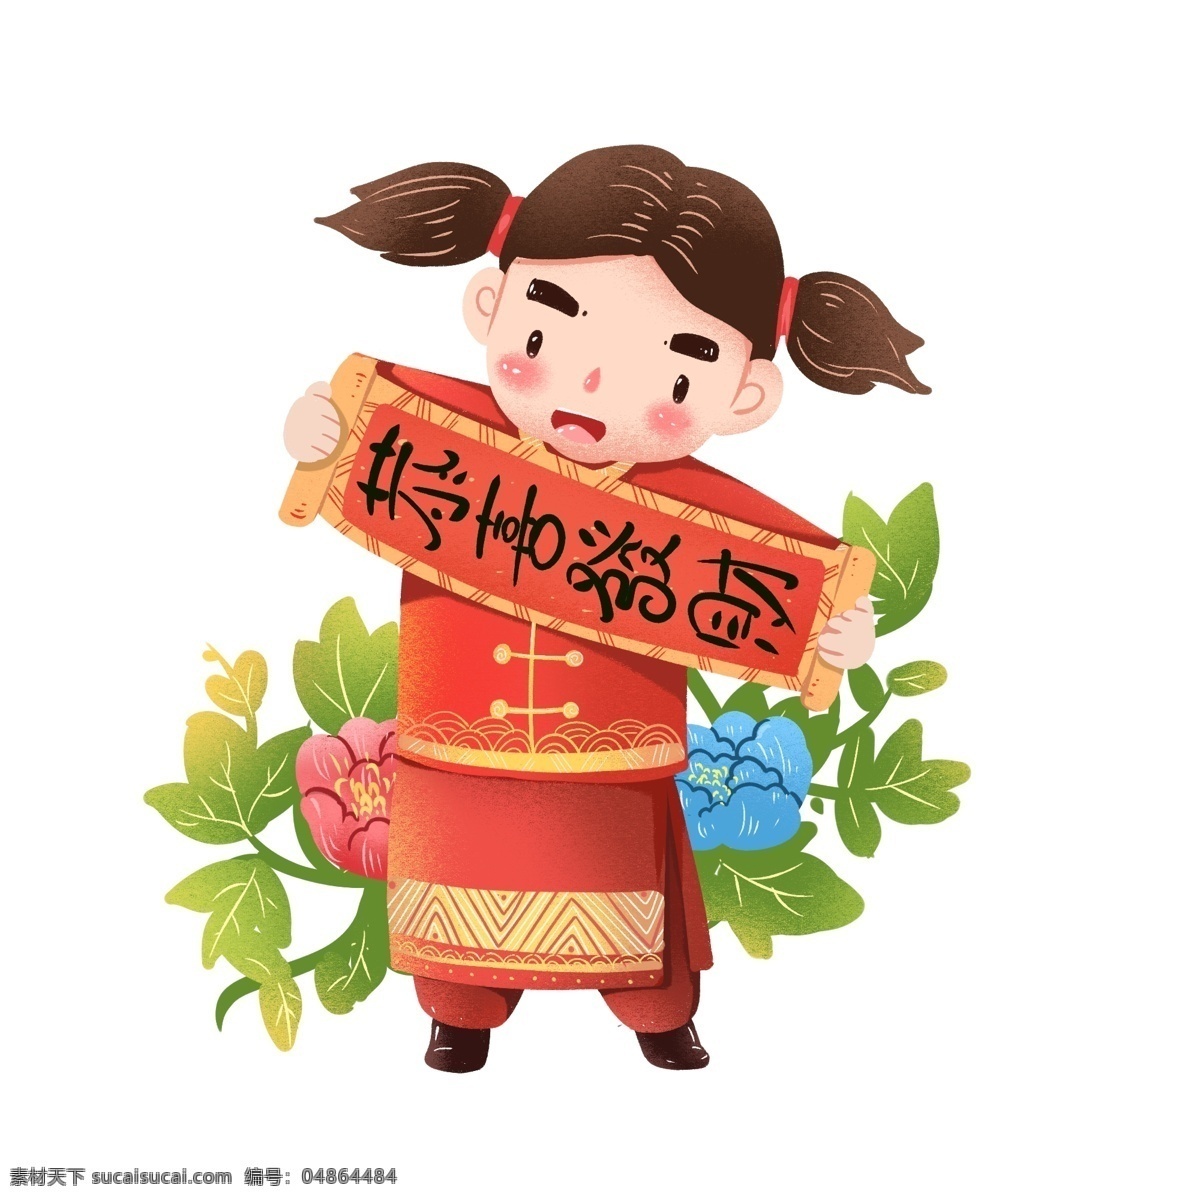 2019 猪年 春节 福娃 对联 恭喜发财 中国风 中国娃娃 牡丹